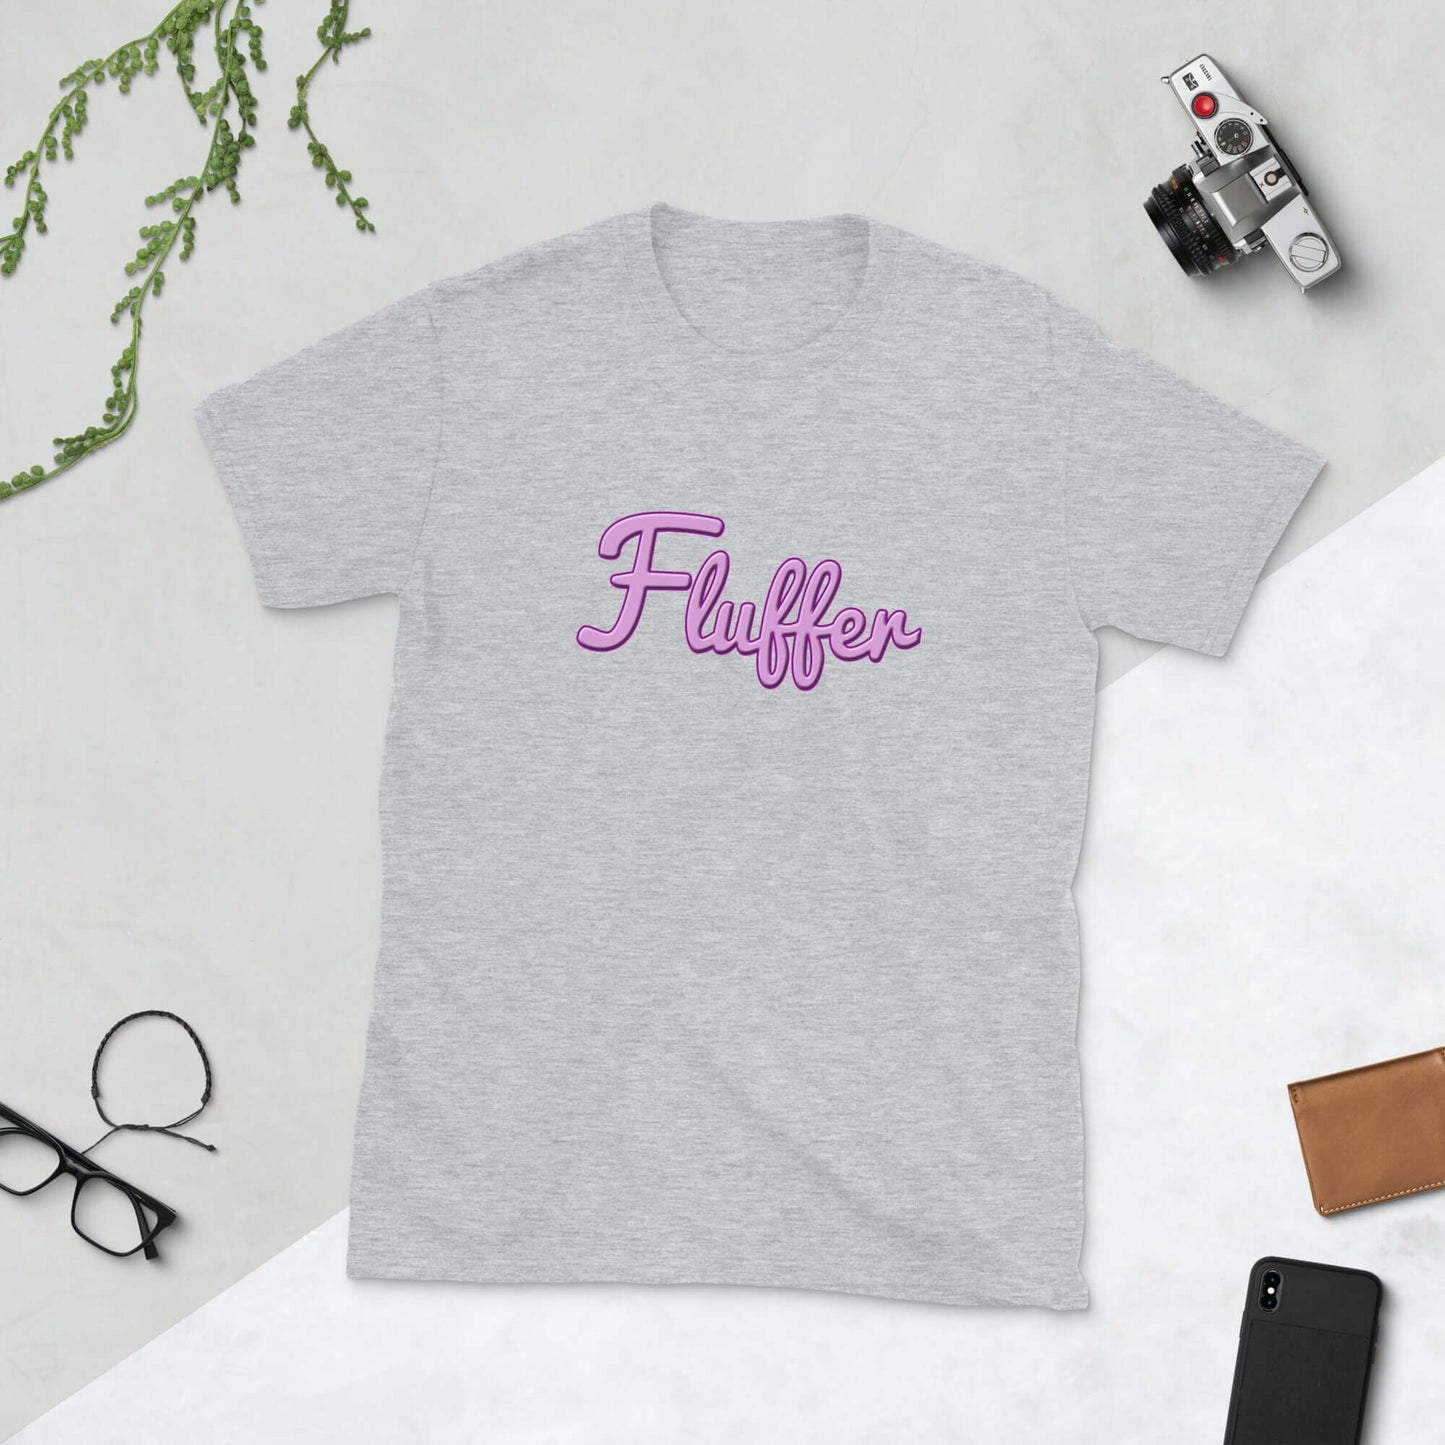 Fluffer T-Shirt